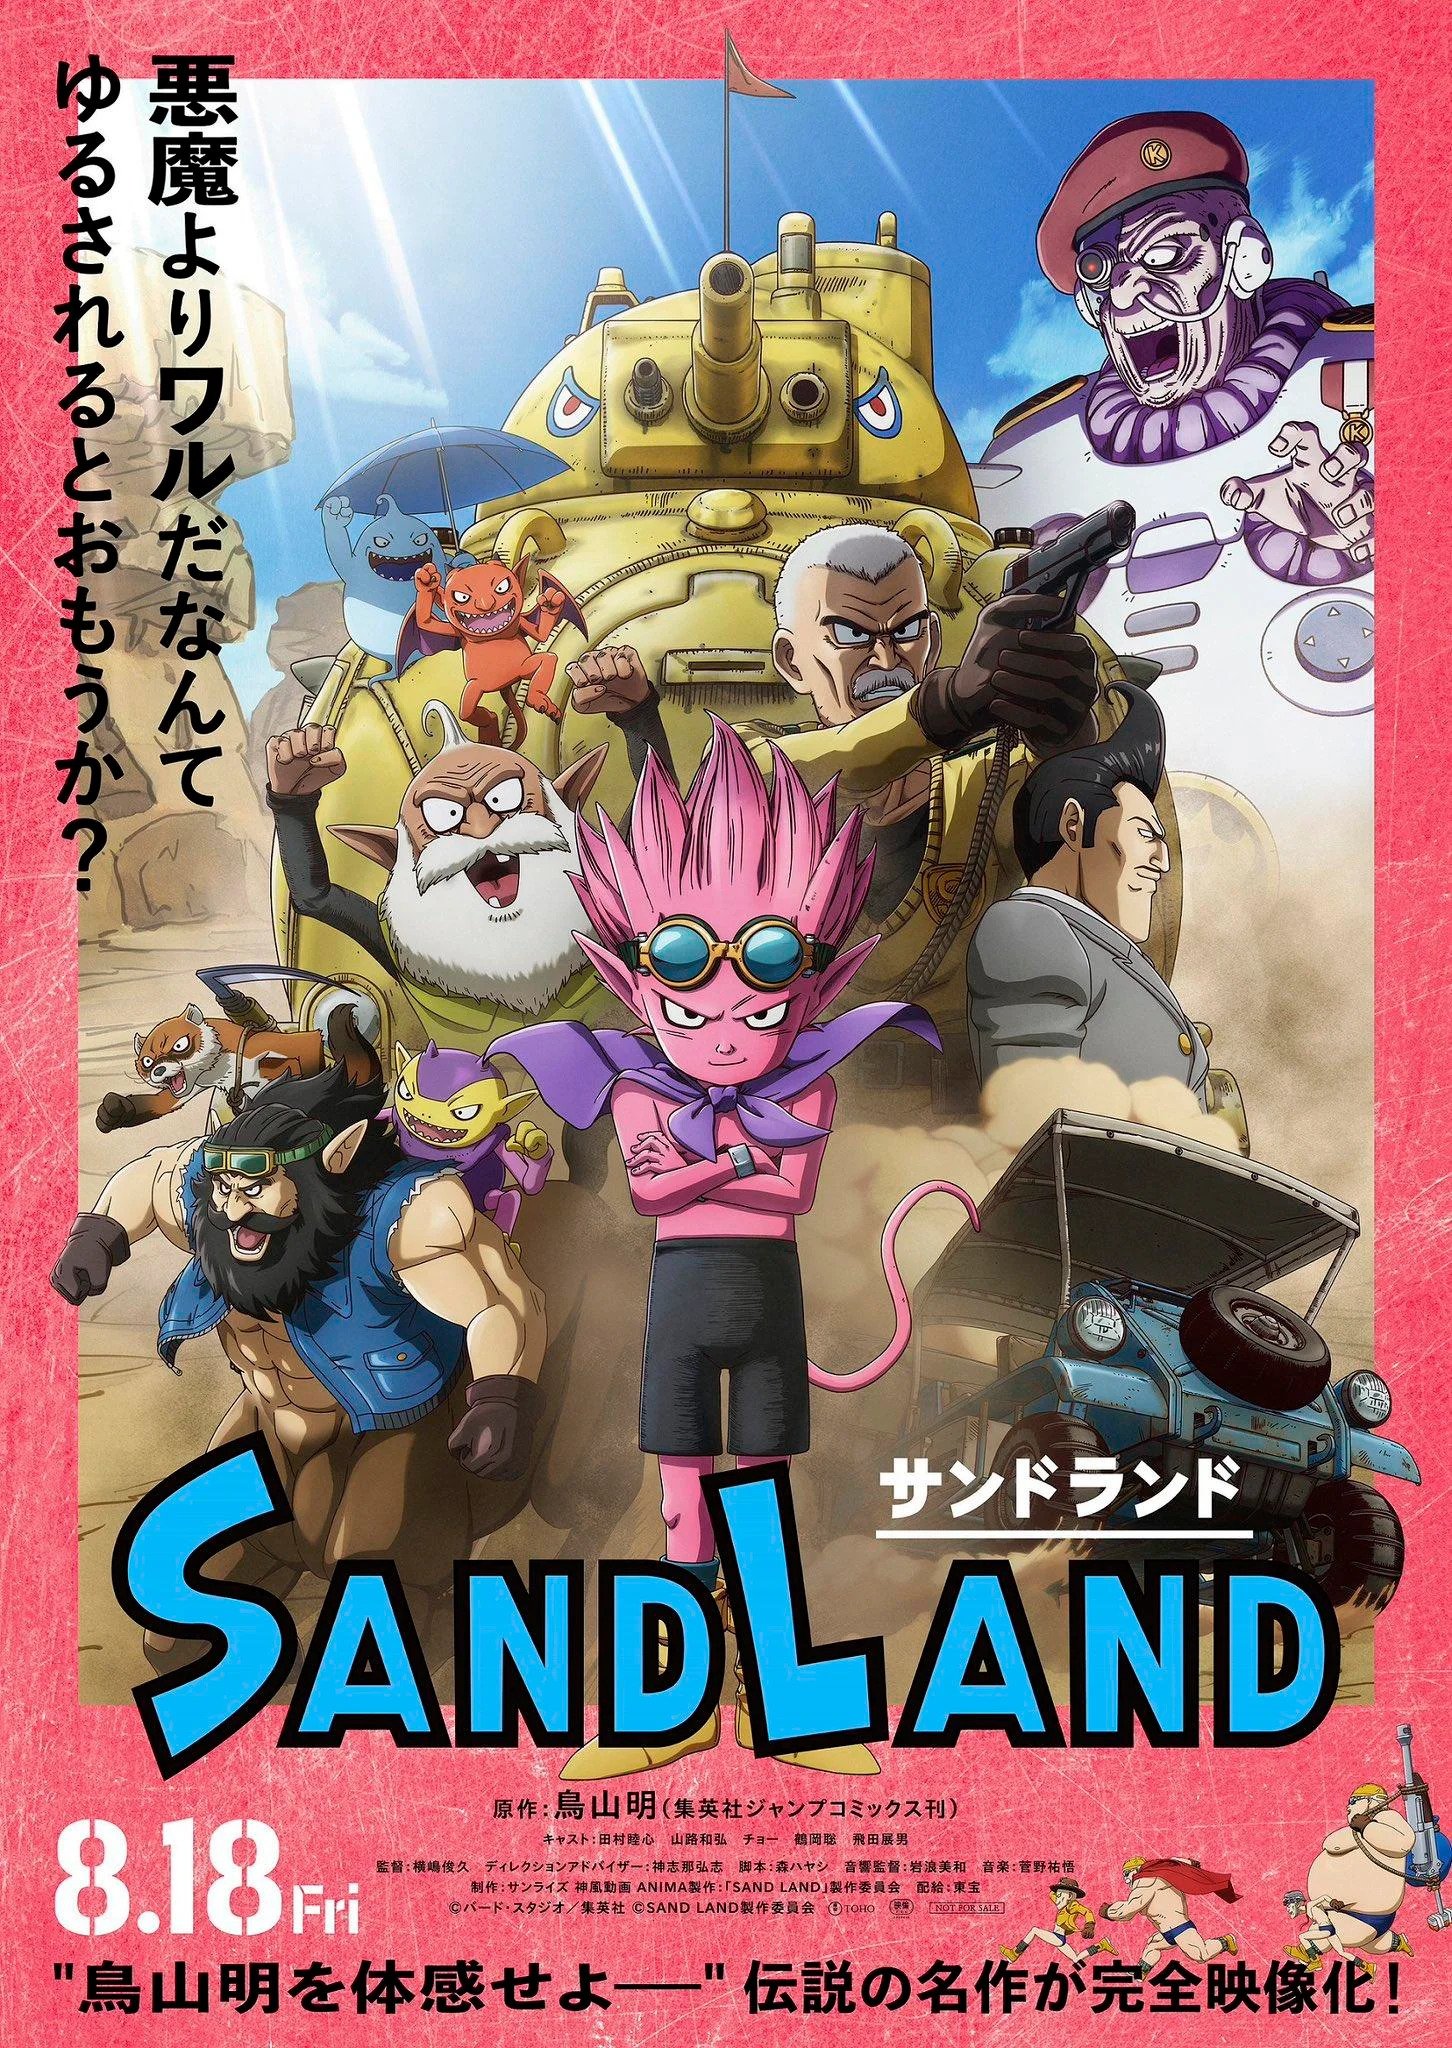 Sand Land: gli ultimi aggiornamenti sul film anime tratto dal manga di Toriyama